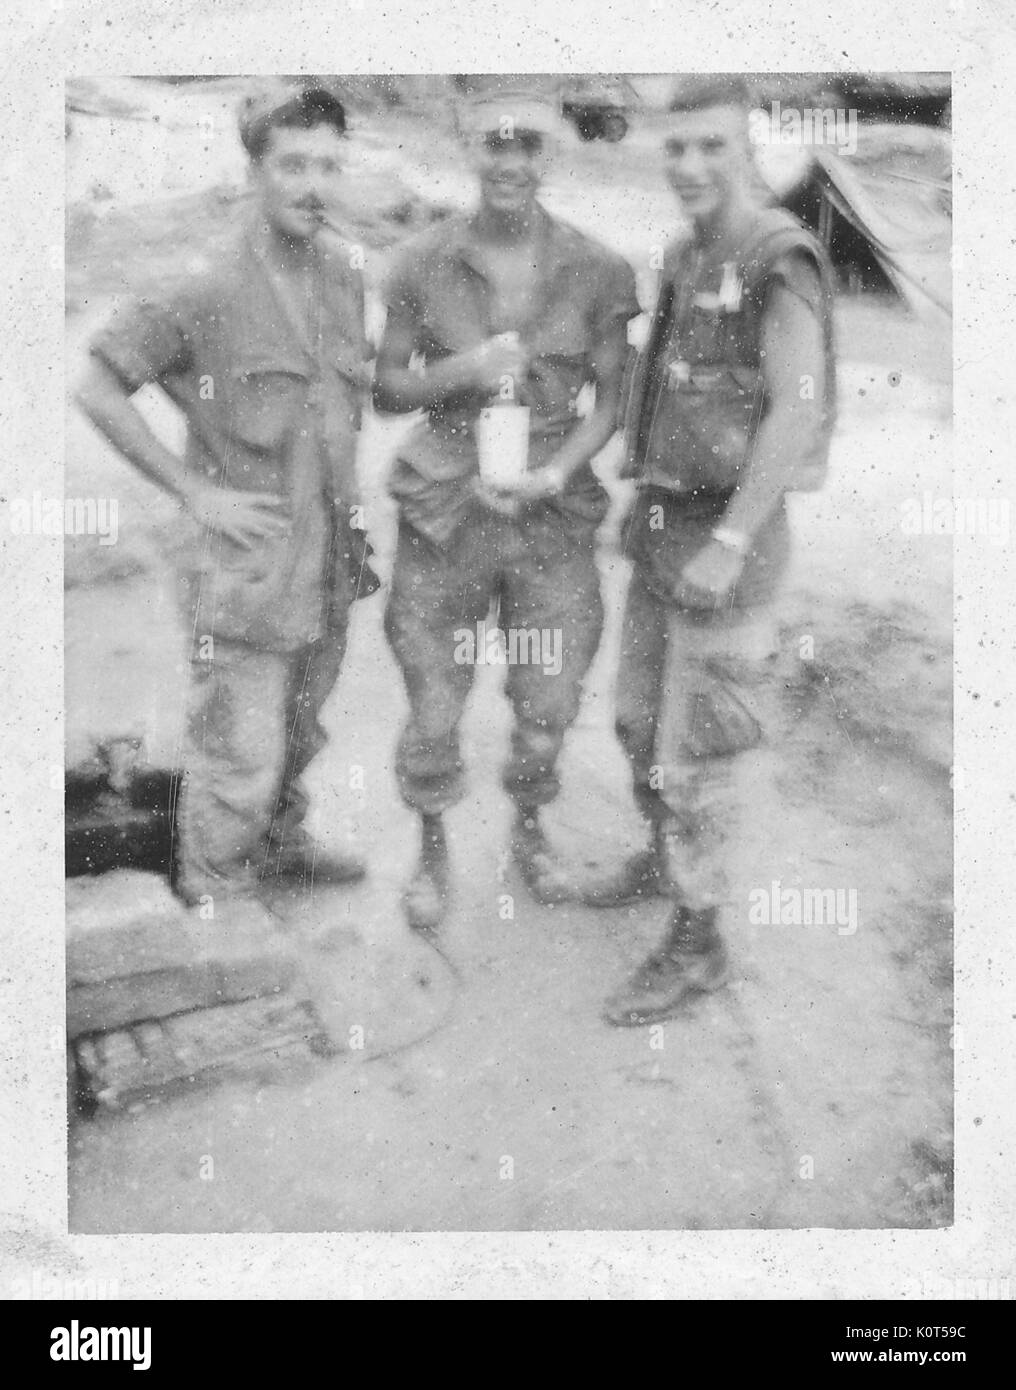 Una desenfocada fotografía de tres miembros de la Infantería de Marina de los Estados Unidos juntos y sonrientes, el soldado en el oriente es la celebración de una gran botella de cristal, una carpa y un camión puede verse en el fondo, Vietnam, 1967. Foto de stock